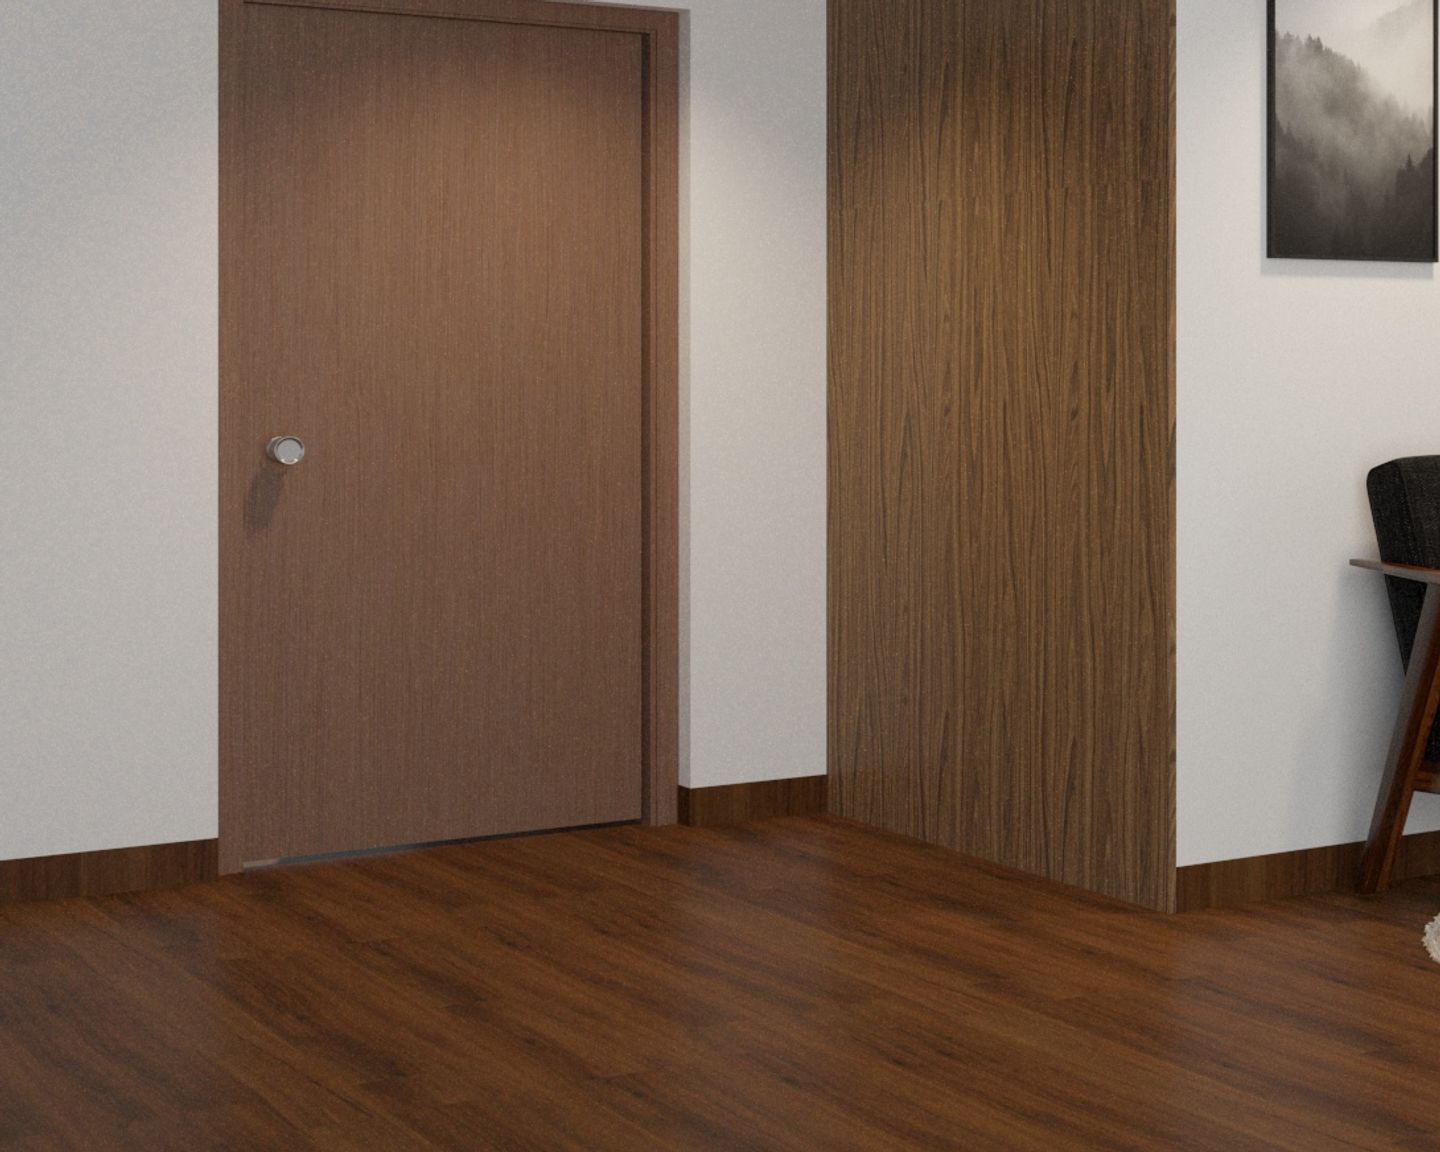 Dark Brown Flooring Design With A Matte Finish - Livspace